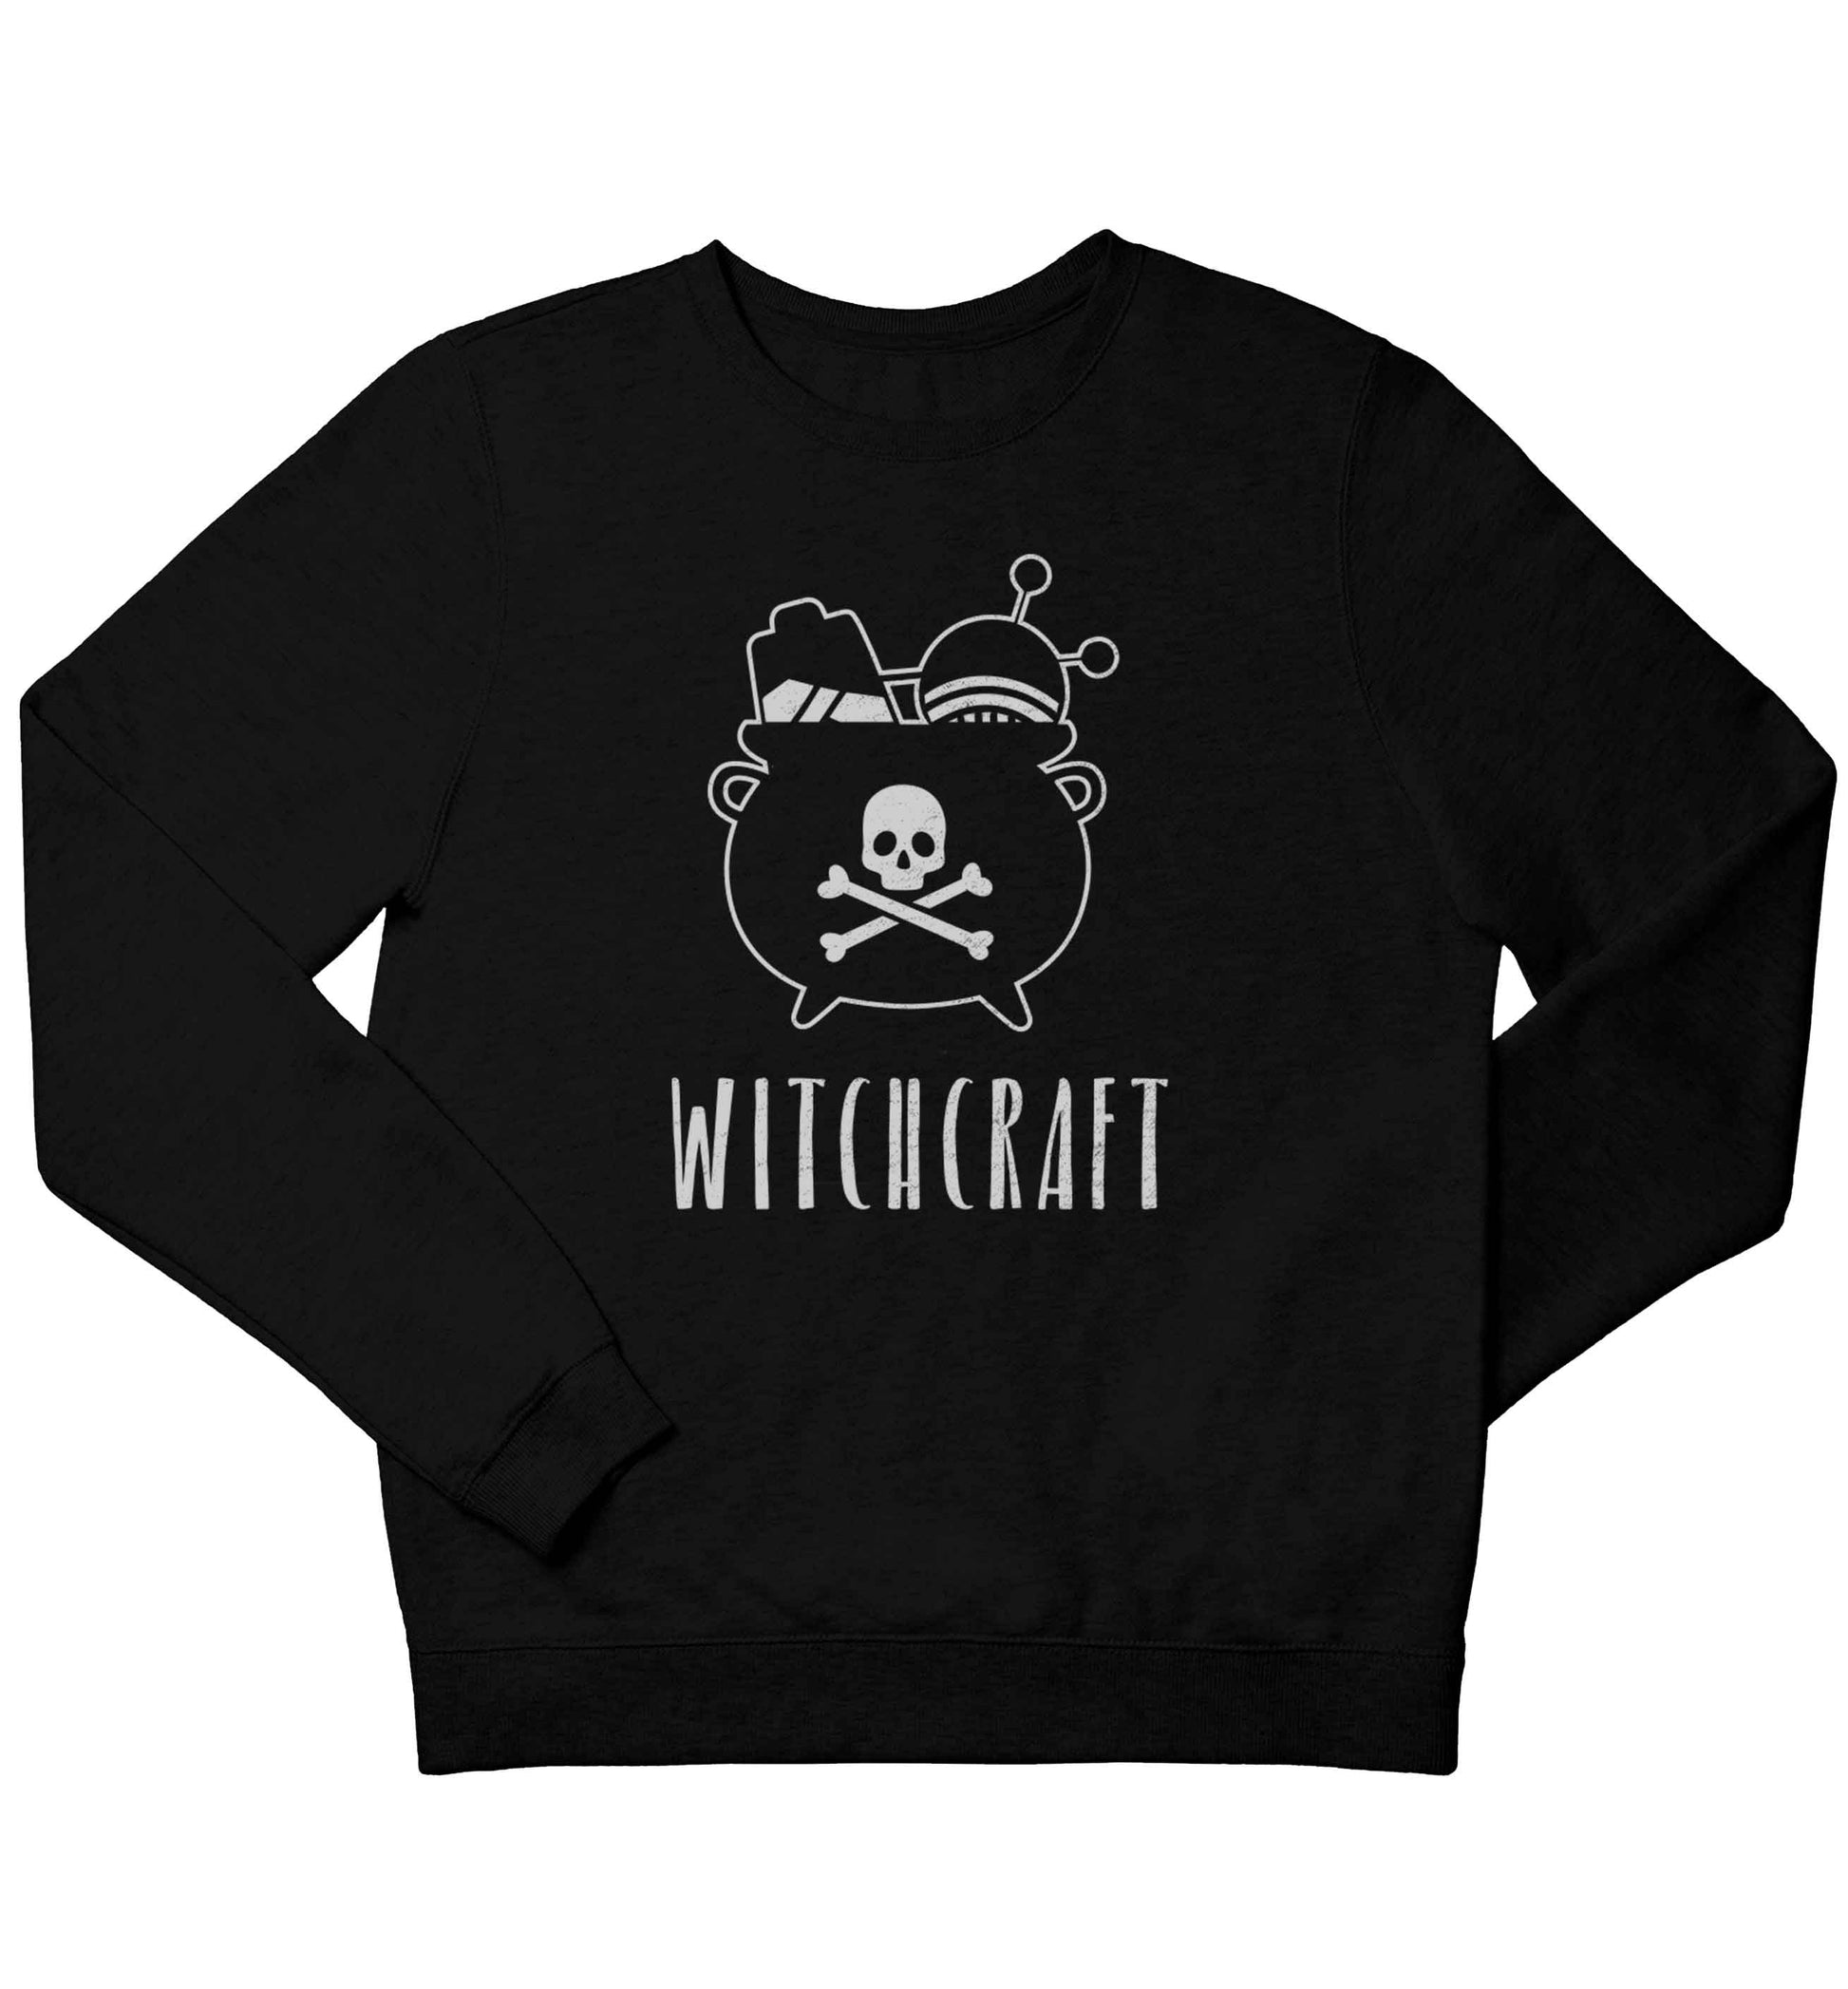 Witchcraft children's black sweater 12-13 Years